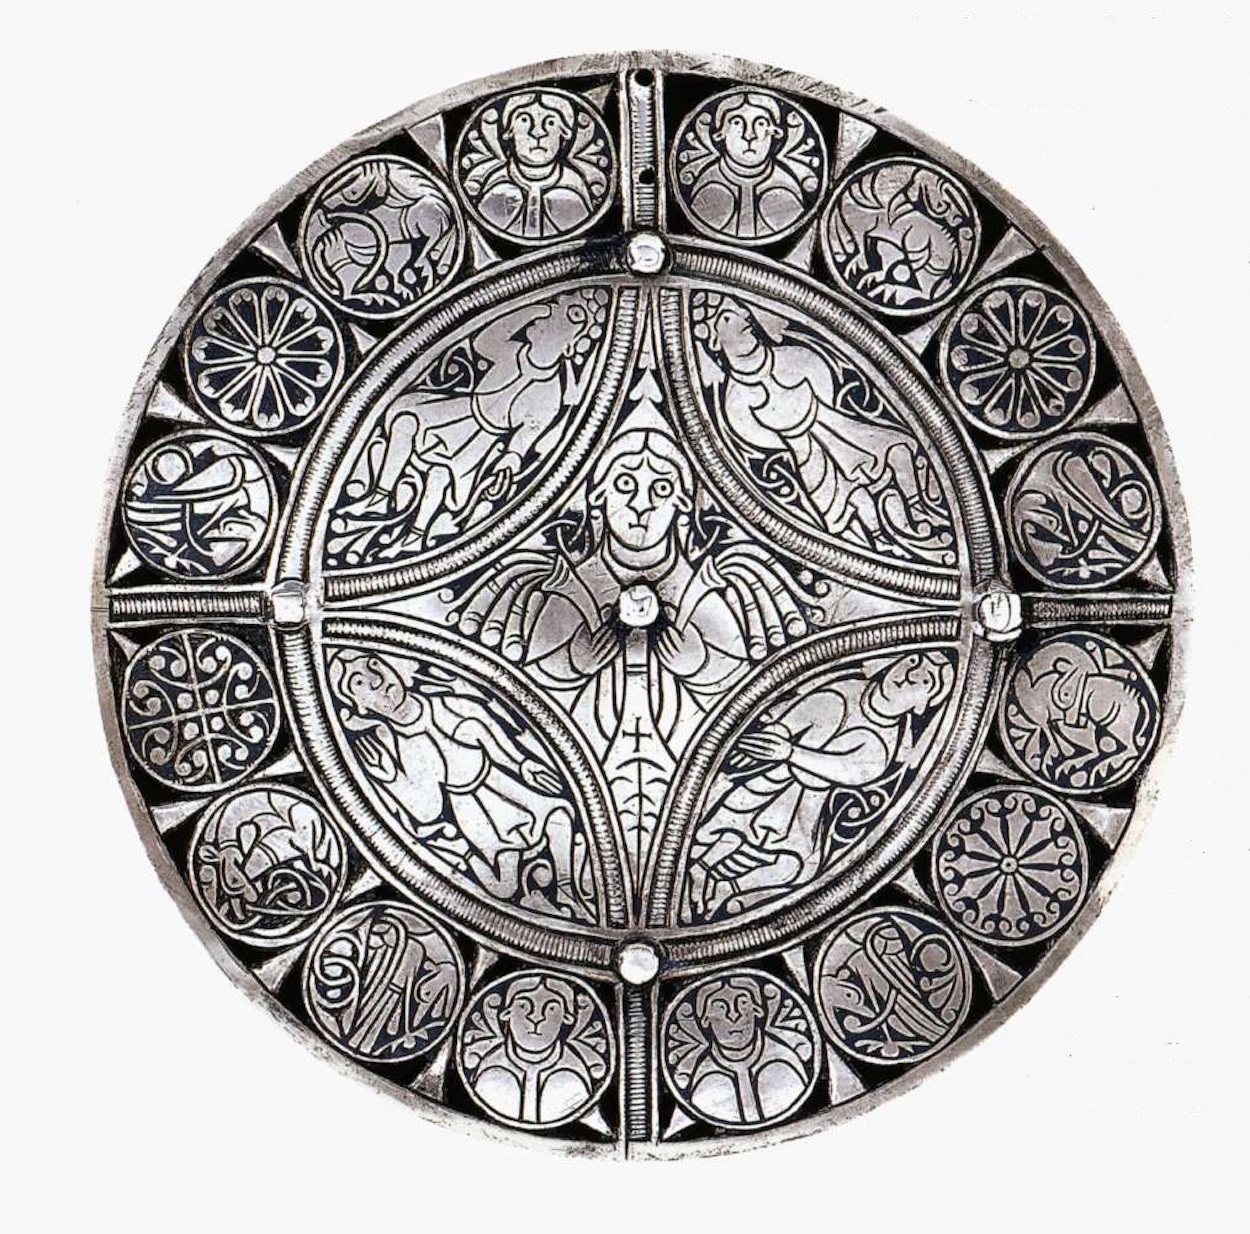 富勒胸针 by 未知艺术家  - Late 9th century 大英博物馆